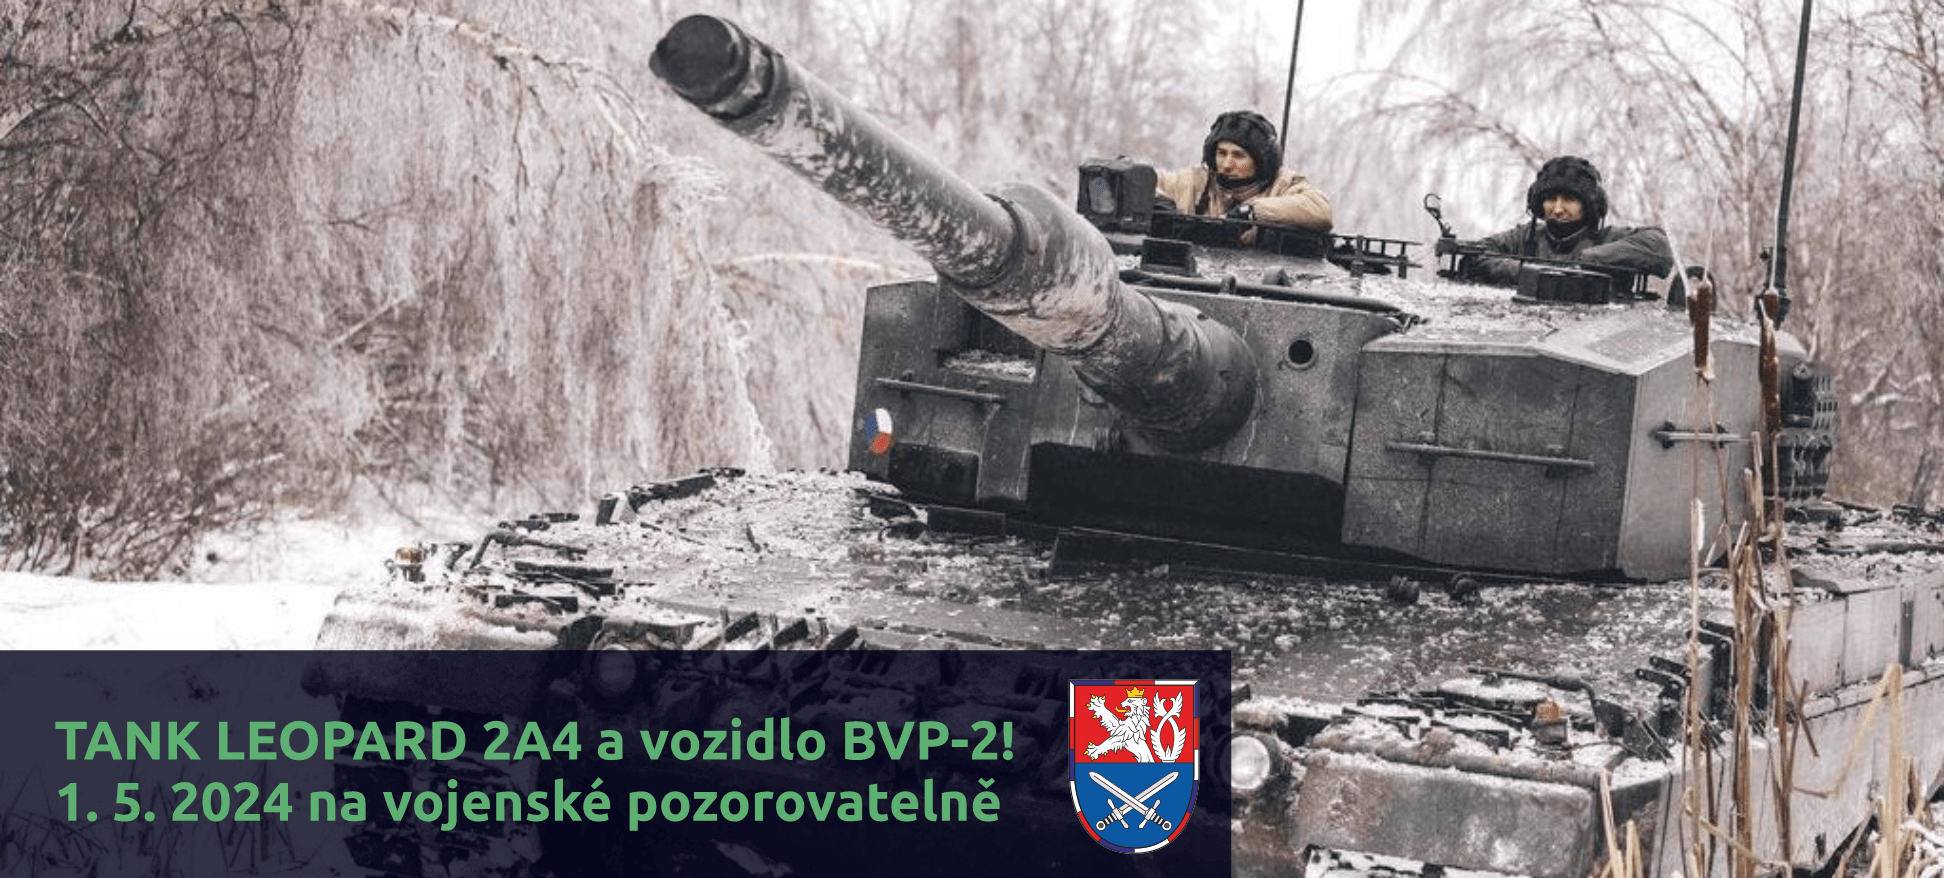 Tank LEOPARD 2A4 a vozidlo BVP-2 1.5.2024 na vojenské pozorovatelně!